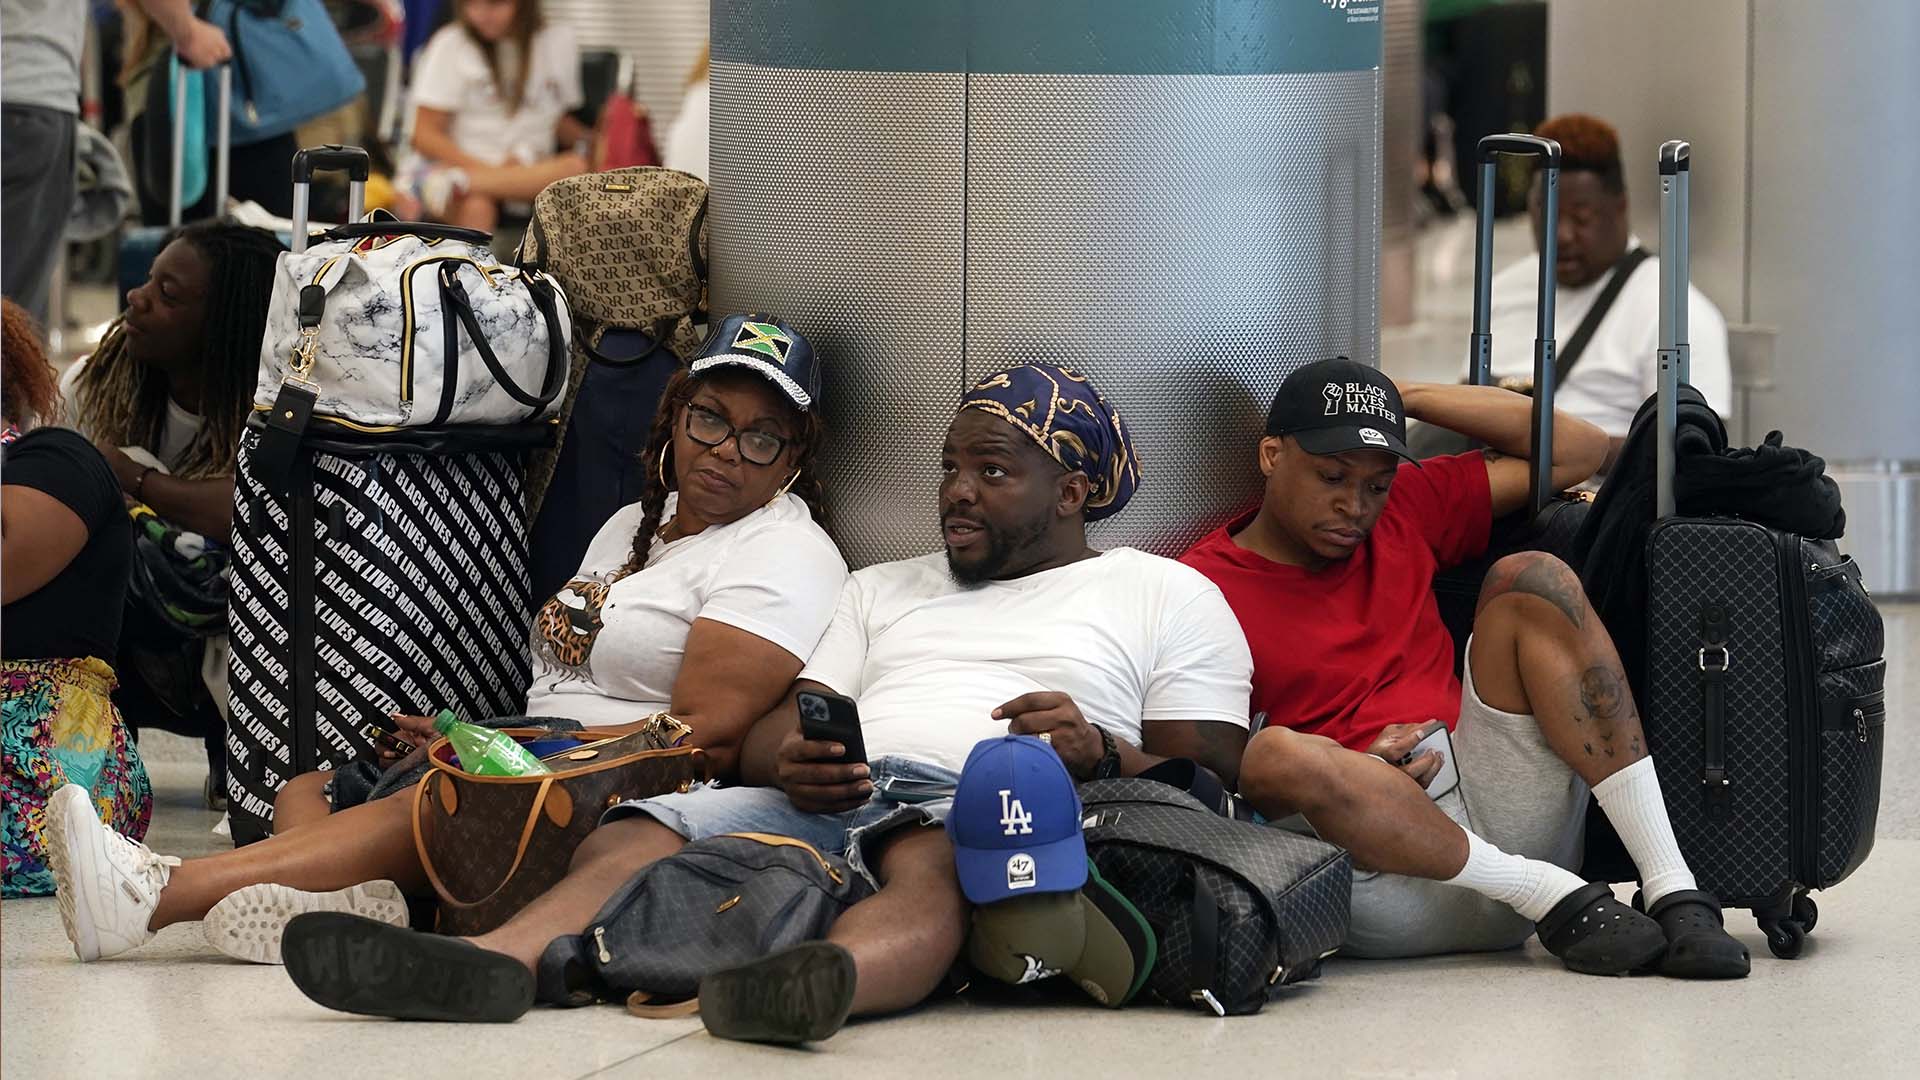 Environ 2,49 millions de passagers ont franchi les contrôles de sécurité dans les aéroports américains vendredi, dépassant ainsi le précédent record de 2,46 millions atteint plus tôt dans la semaine.